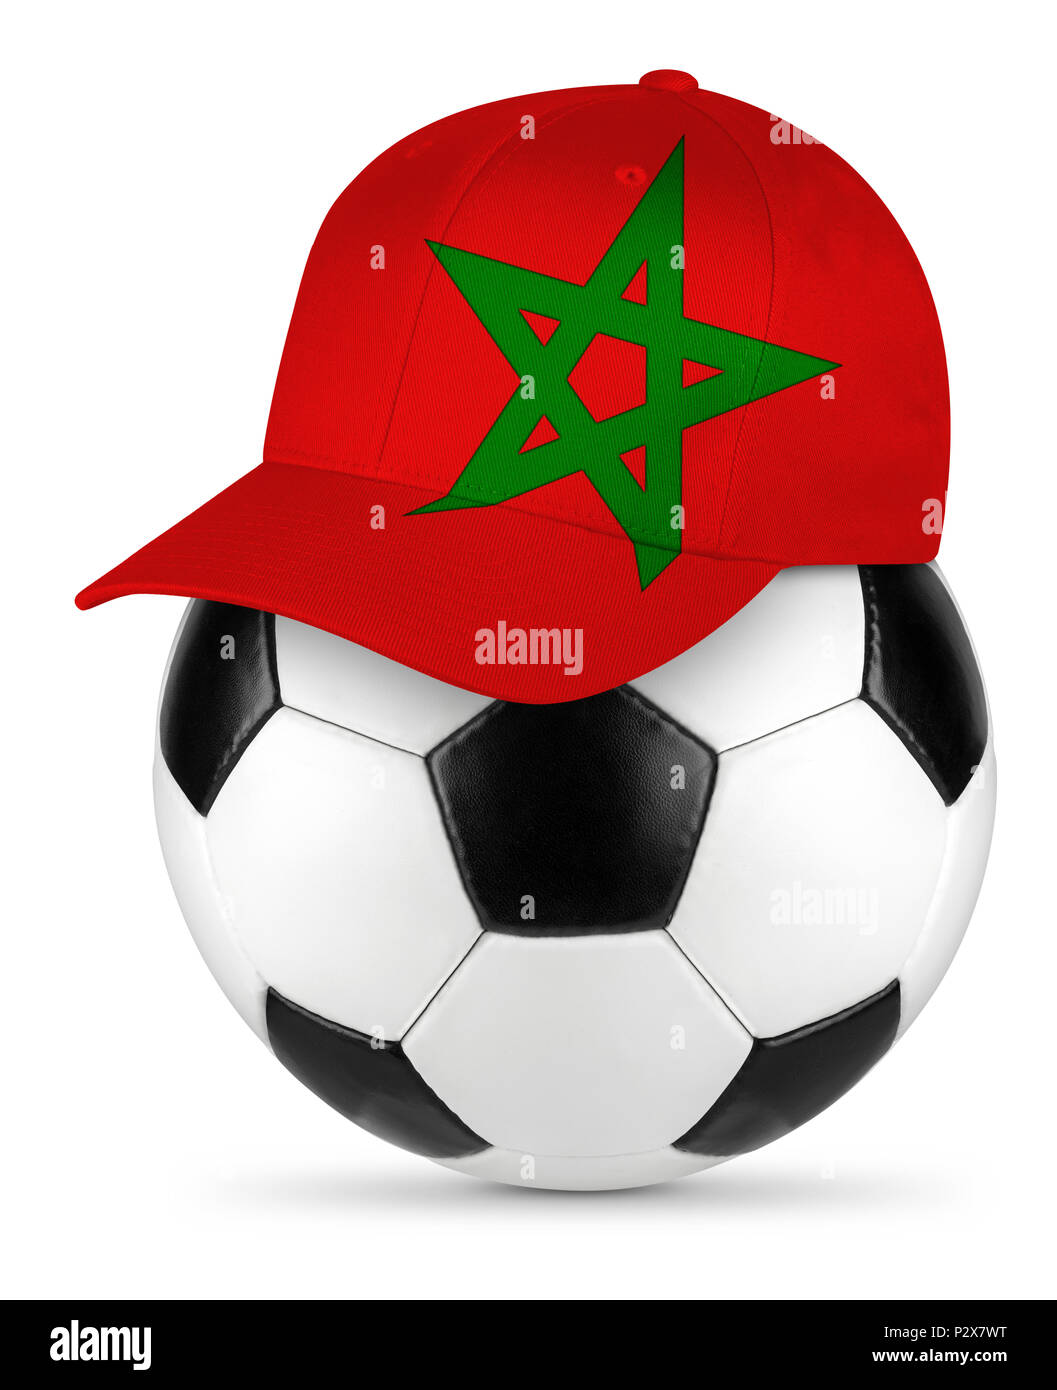 Classic noir en cuir blanc ballon de soccer avec le Maroc amateur de baseball cap fond isolé concept sport football Banque D'Images